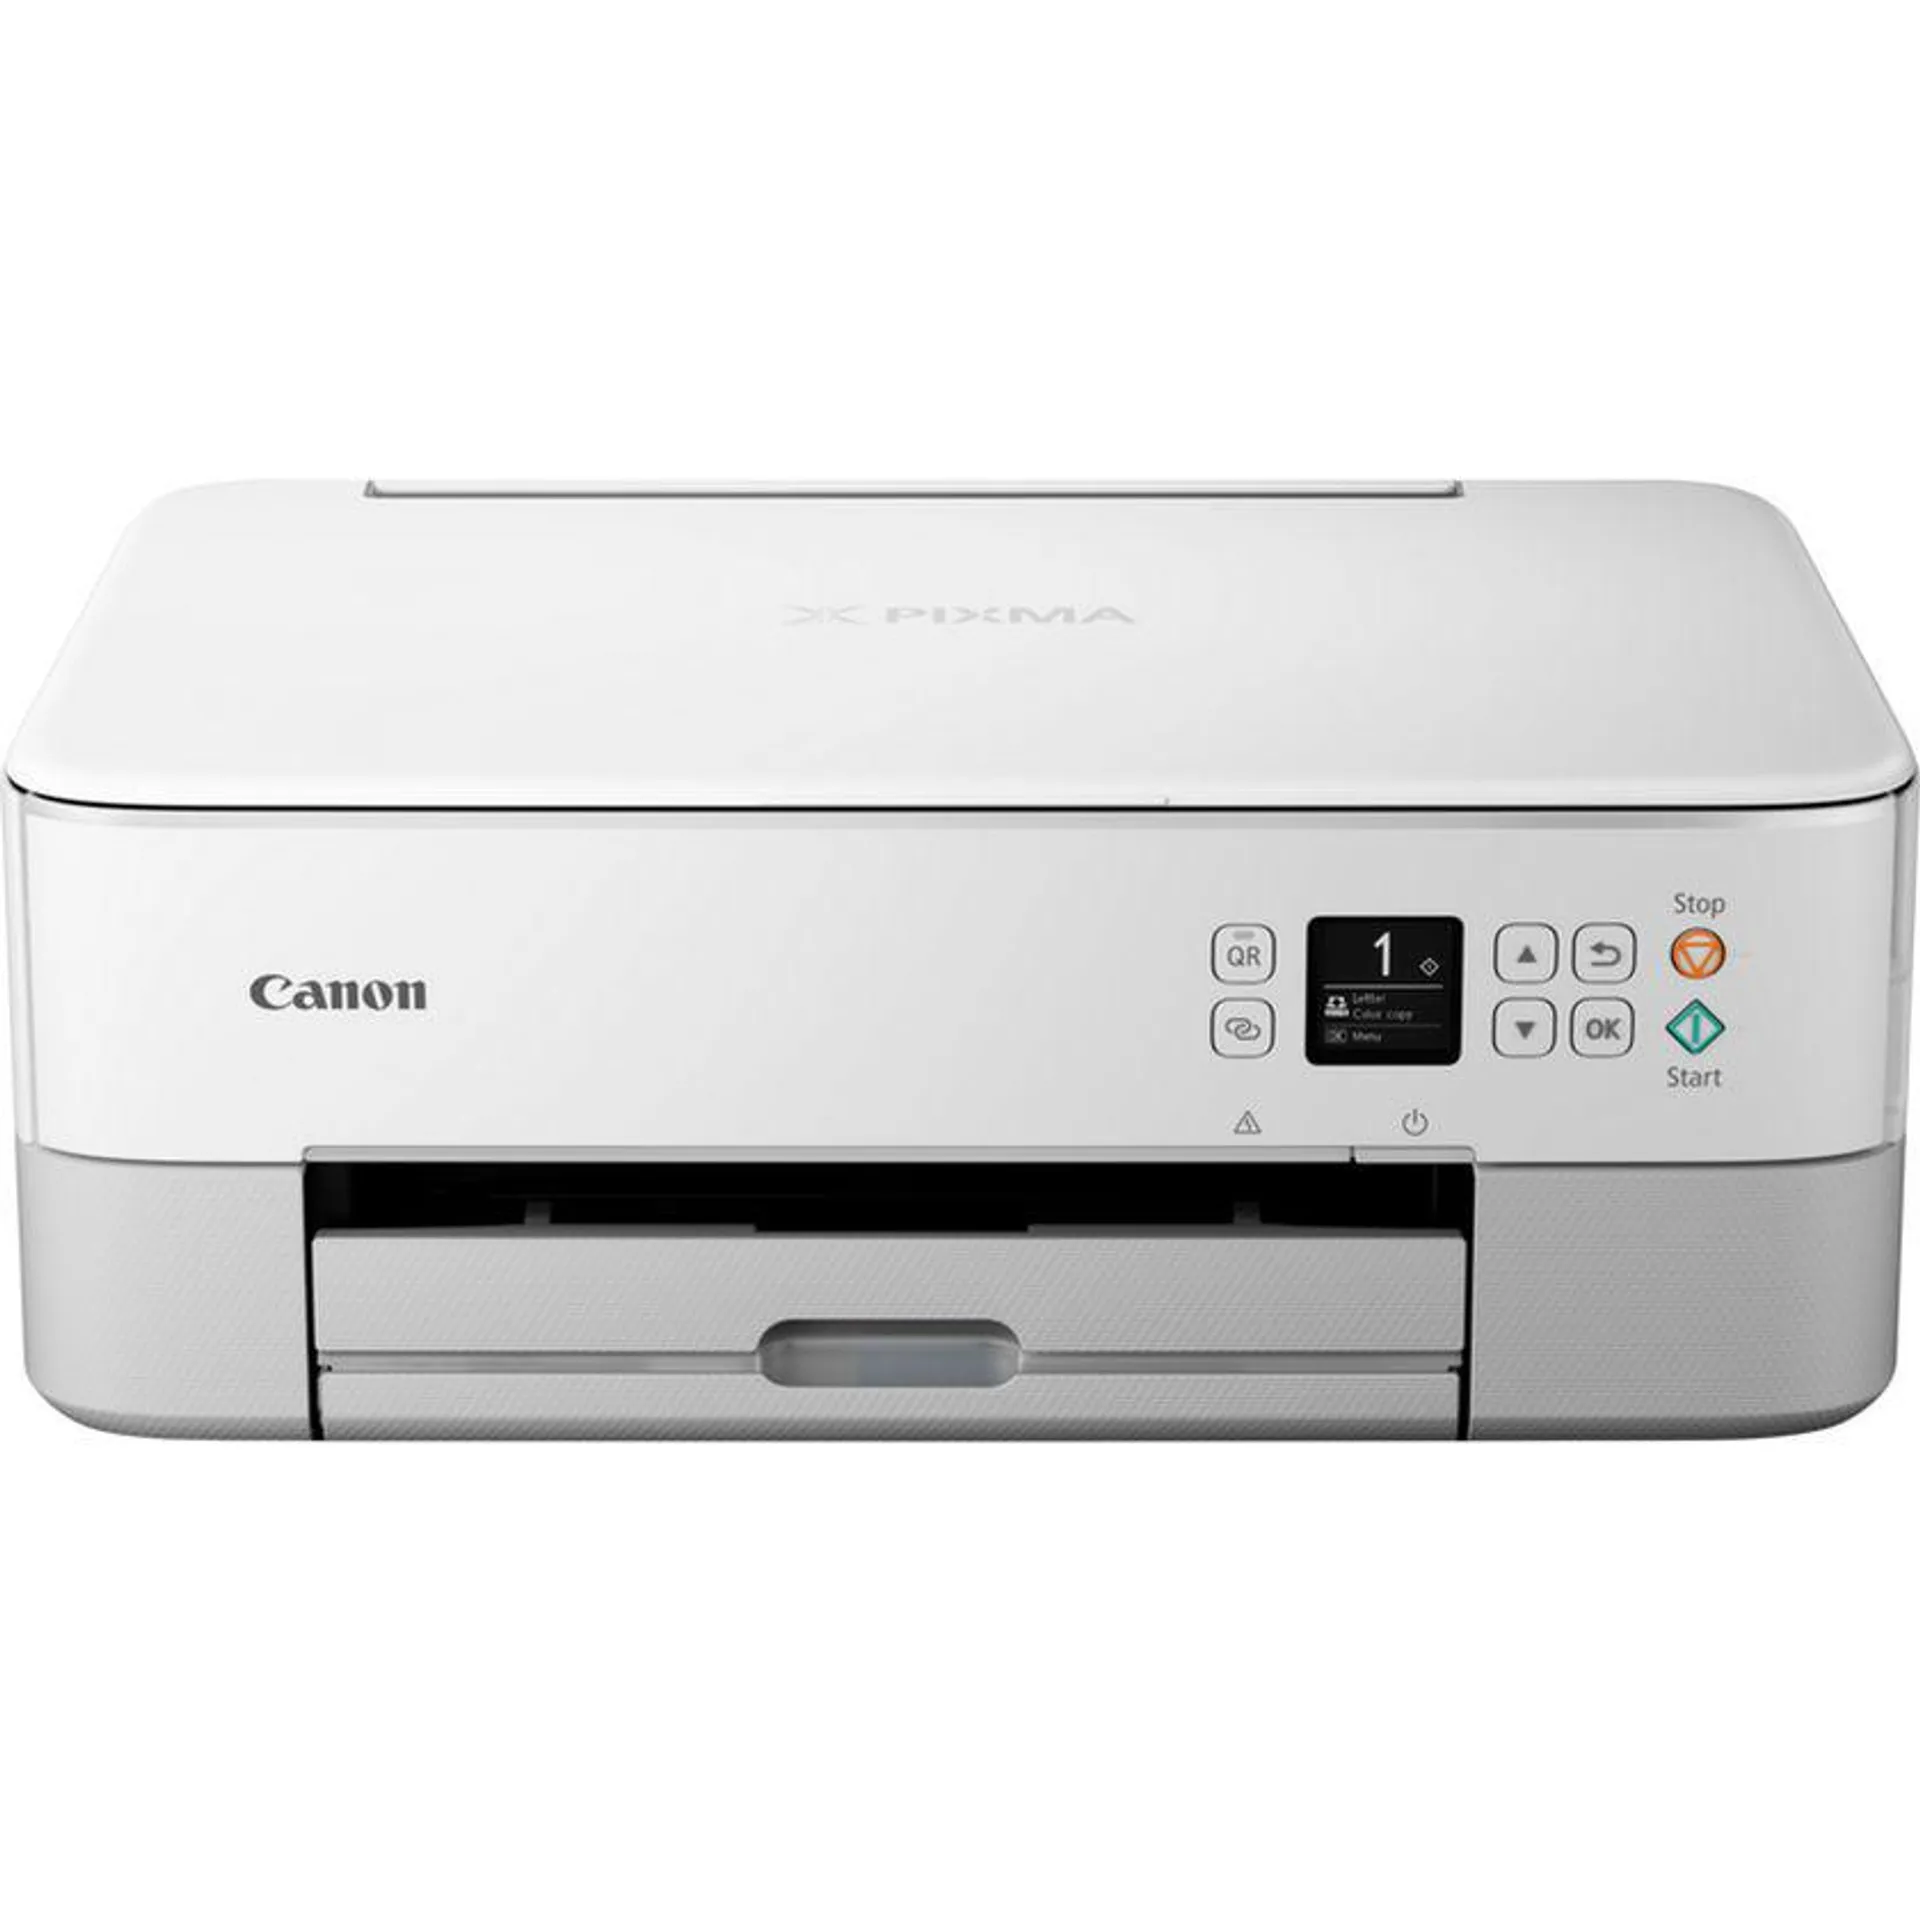 Impresora fotográfica 3 en 1 de inyección de tinta en color e inalámbrica PIXMA TS5351i de Canon, en blanco